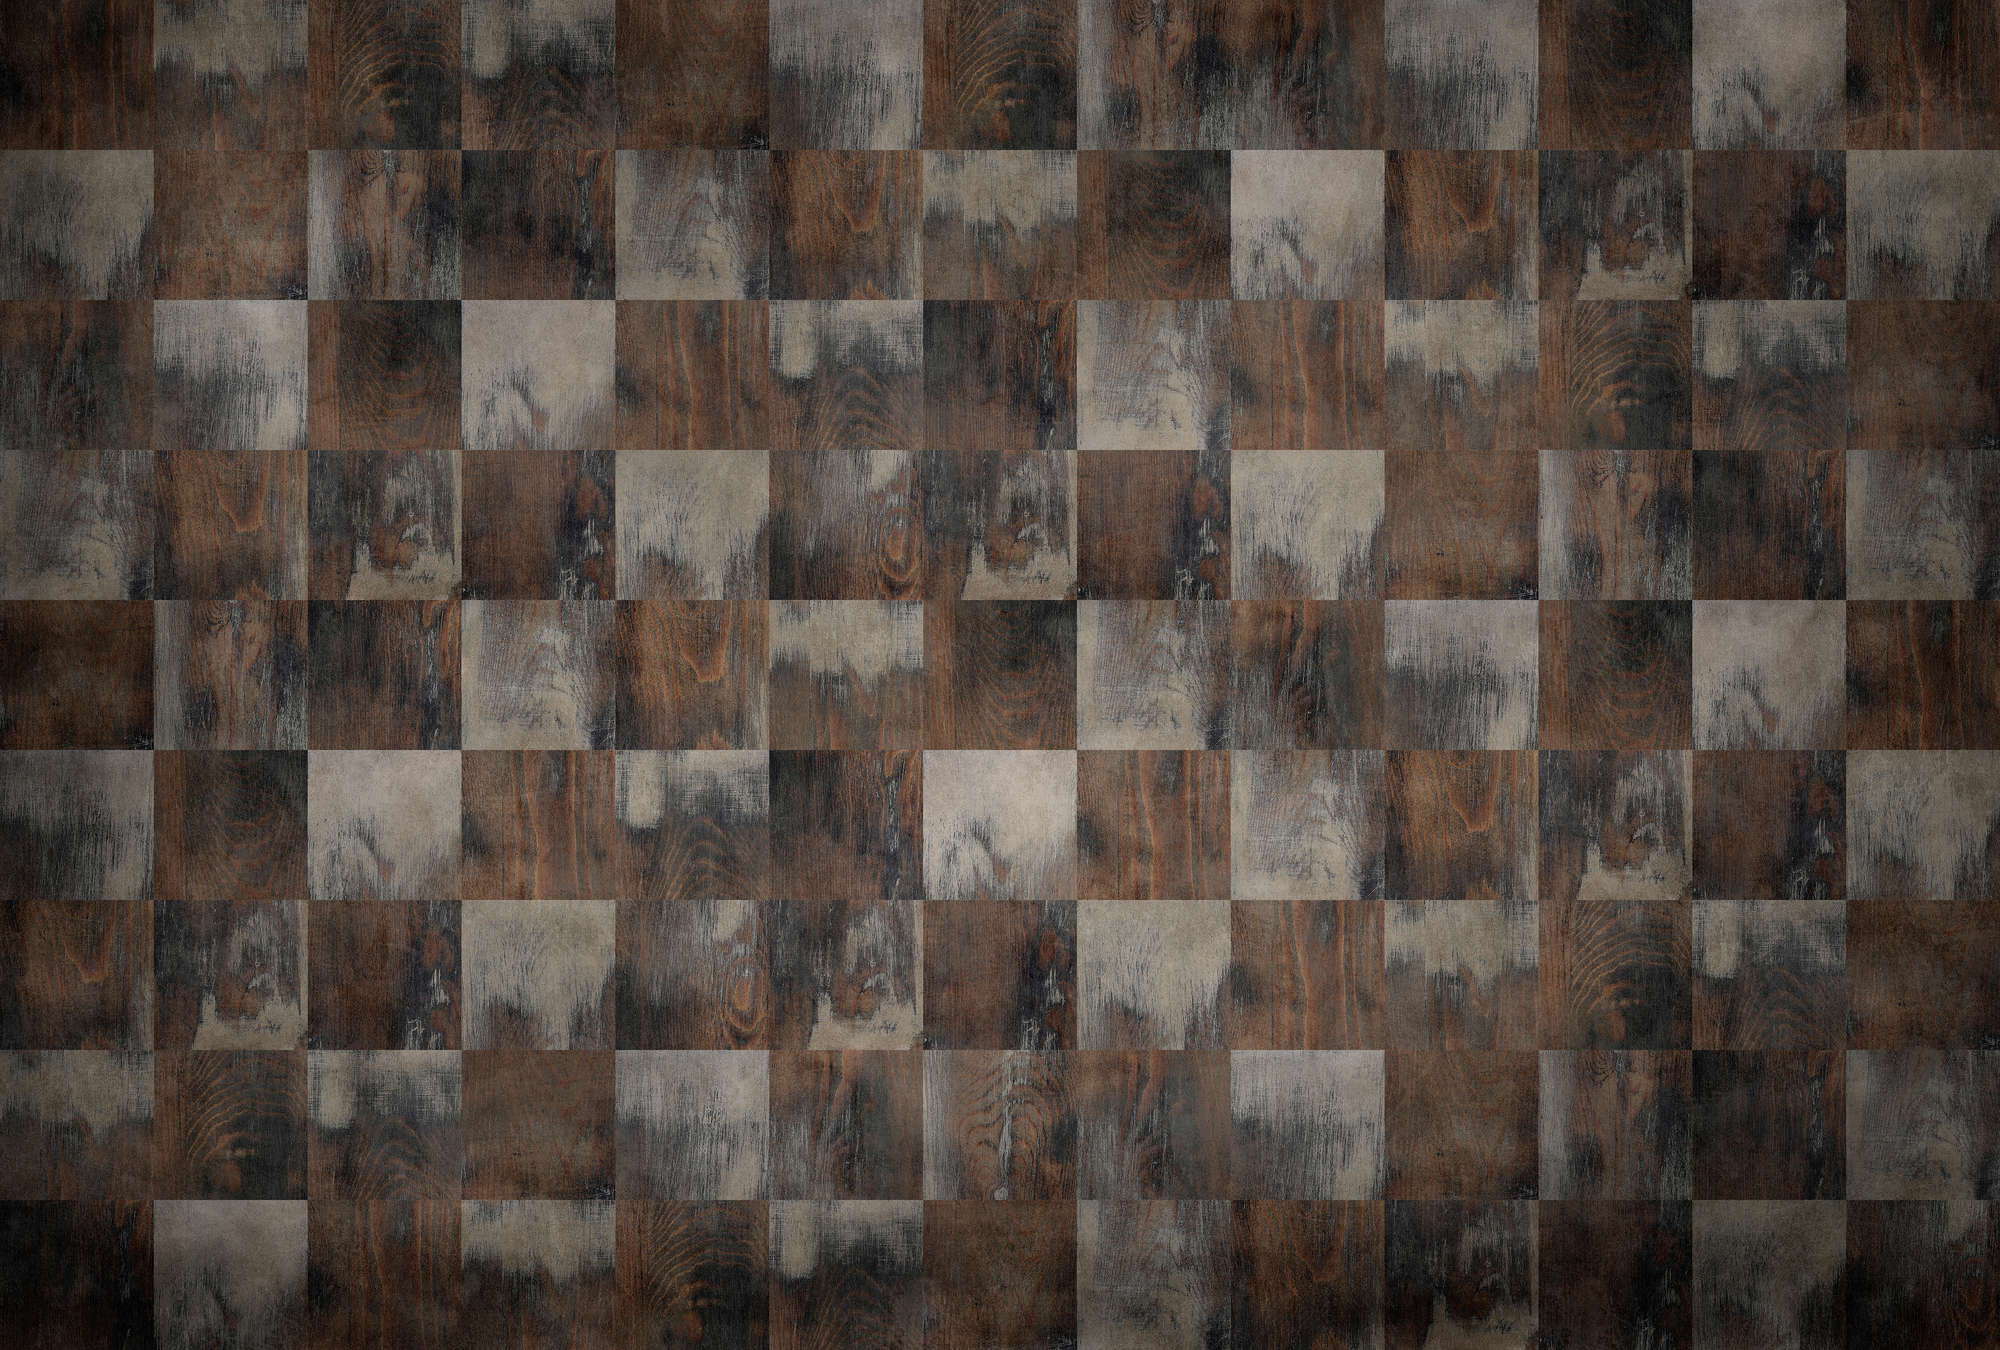             Fábrica 2 - Papel pintado fotográfico con aspecto de madera en forma de tablero de ajedrez con aspecto usado
        